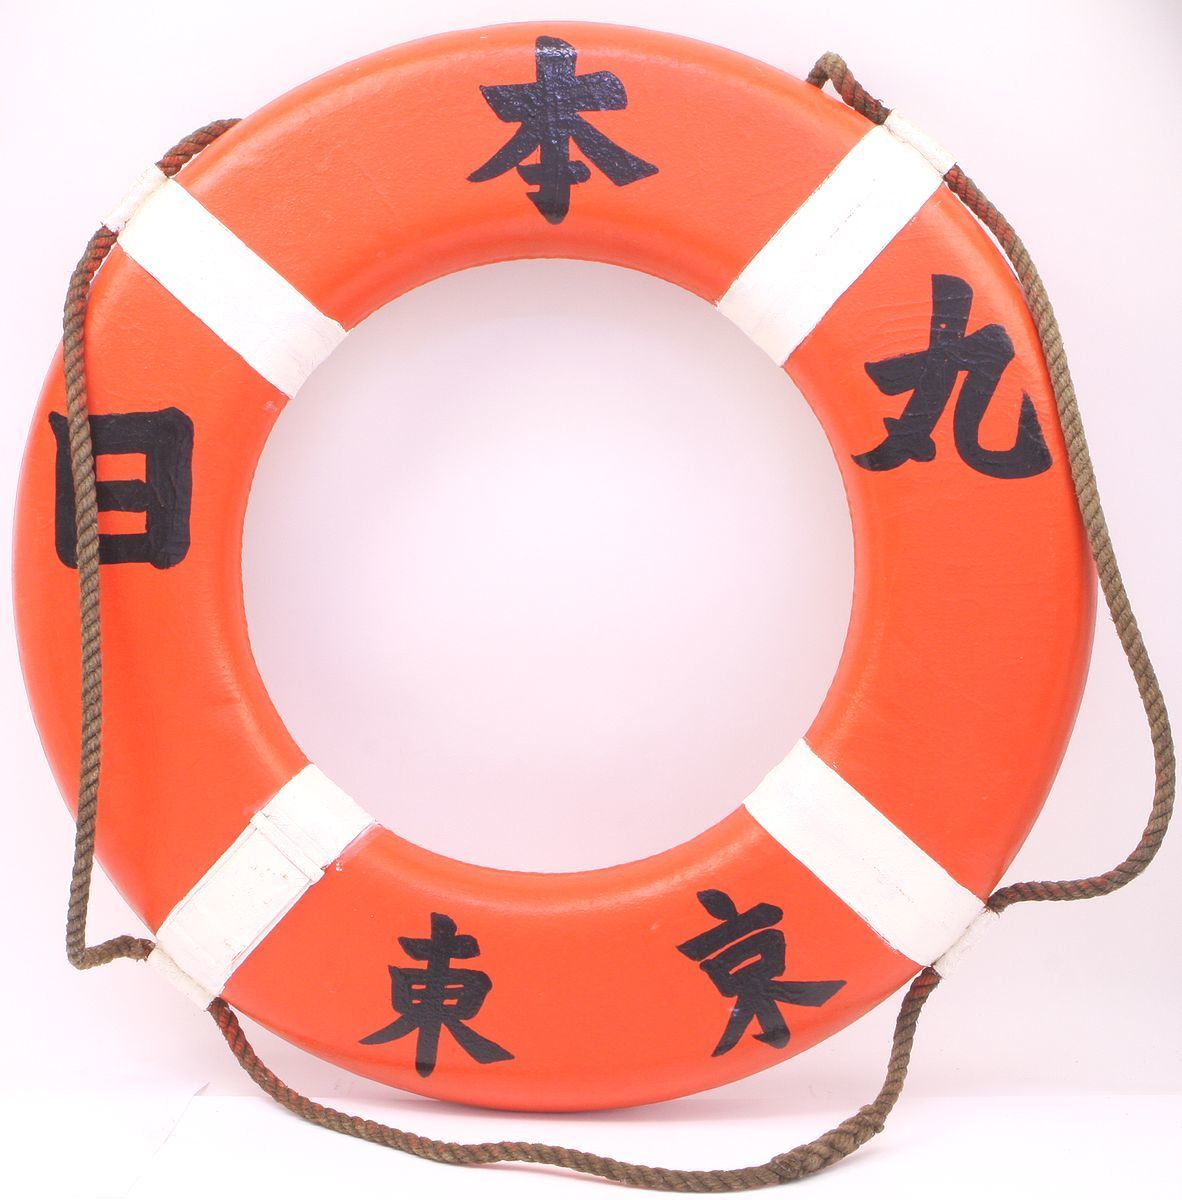  lifesaving swim ring * Tokyo sea . circle / Tokyo Japan circle * diameter approximately 75.* antique / collection goods 